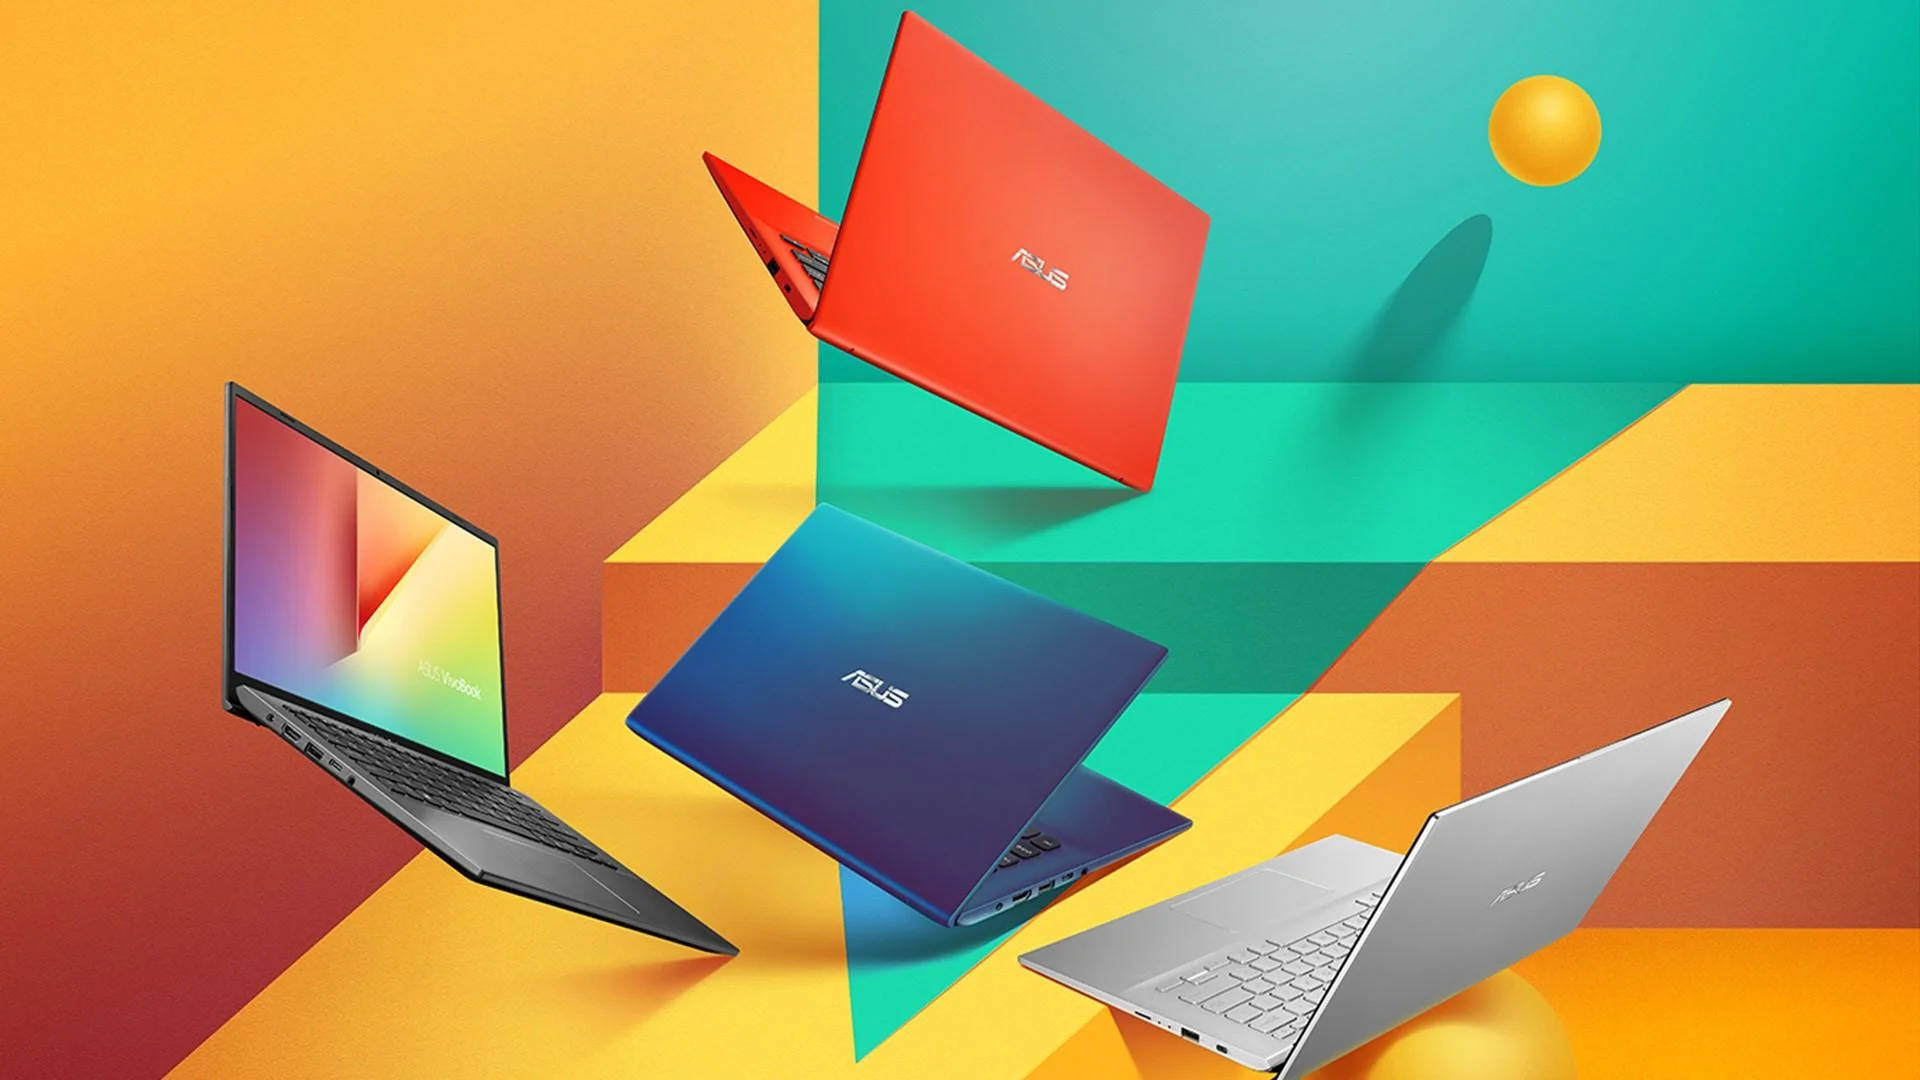 Colorful Asus Laptops Wallpaper